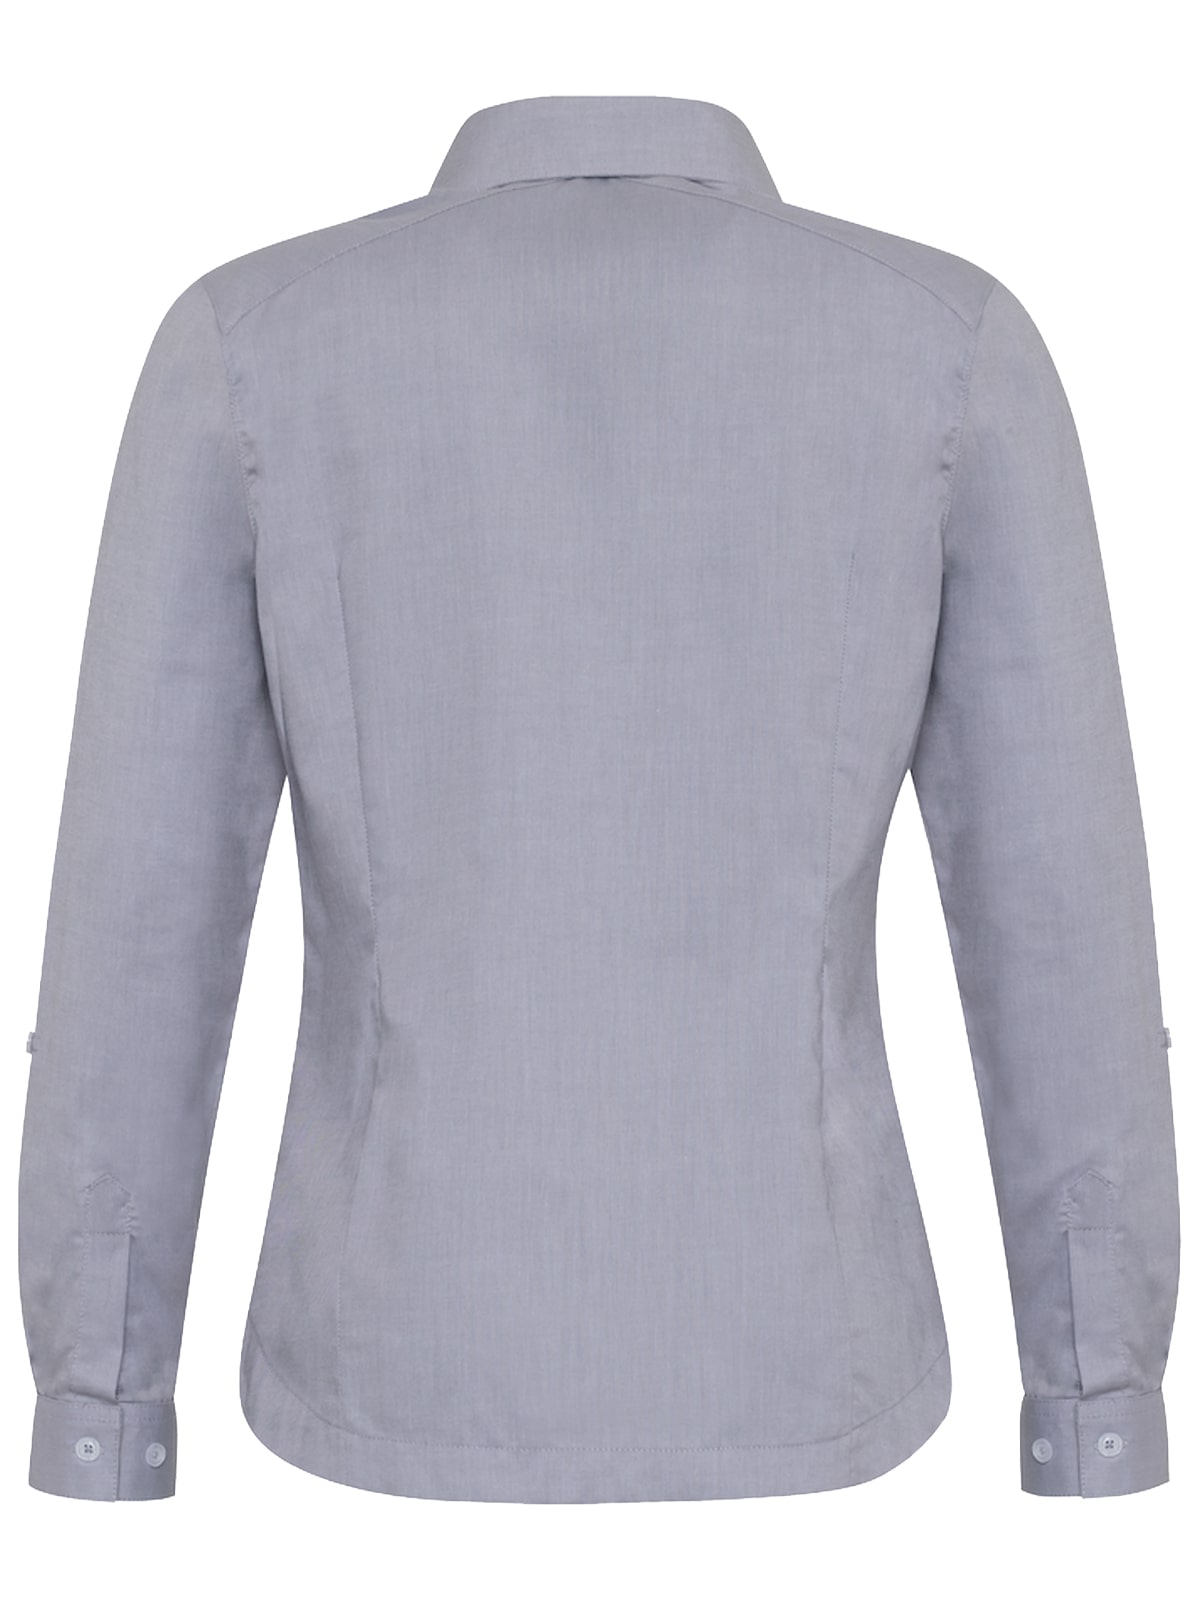 gray oxford blouse rear view